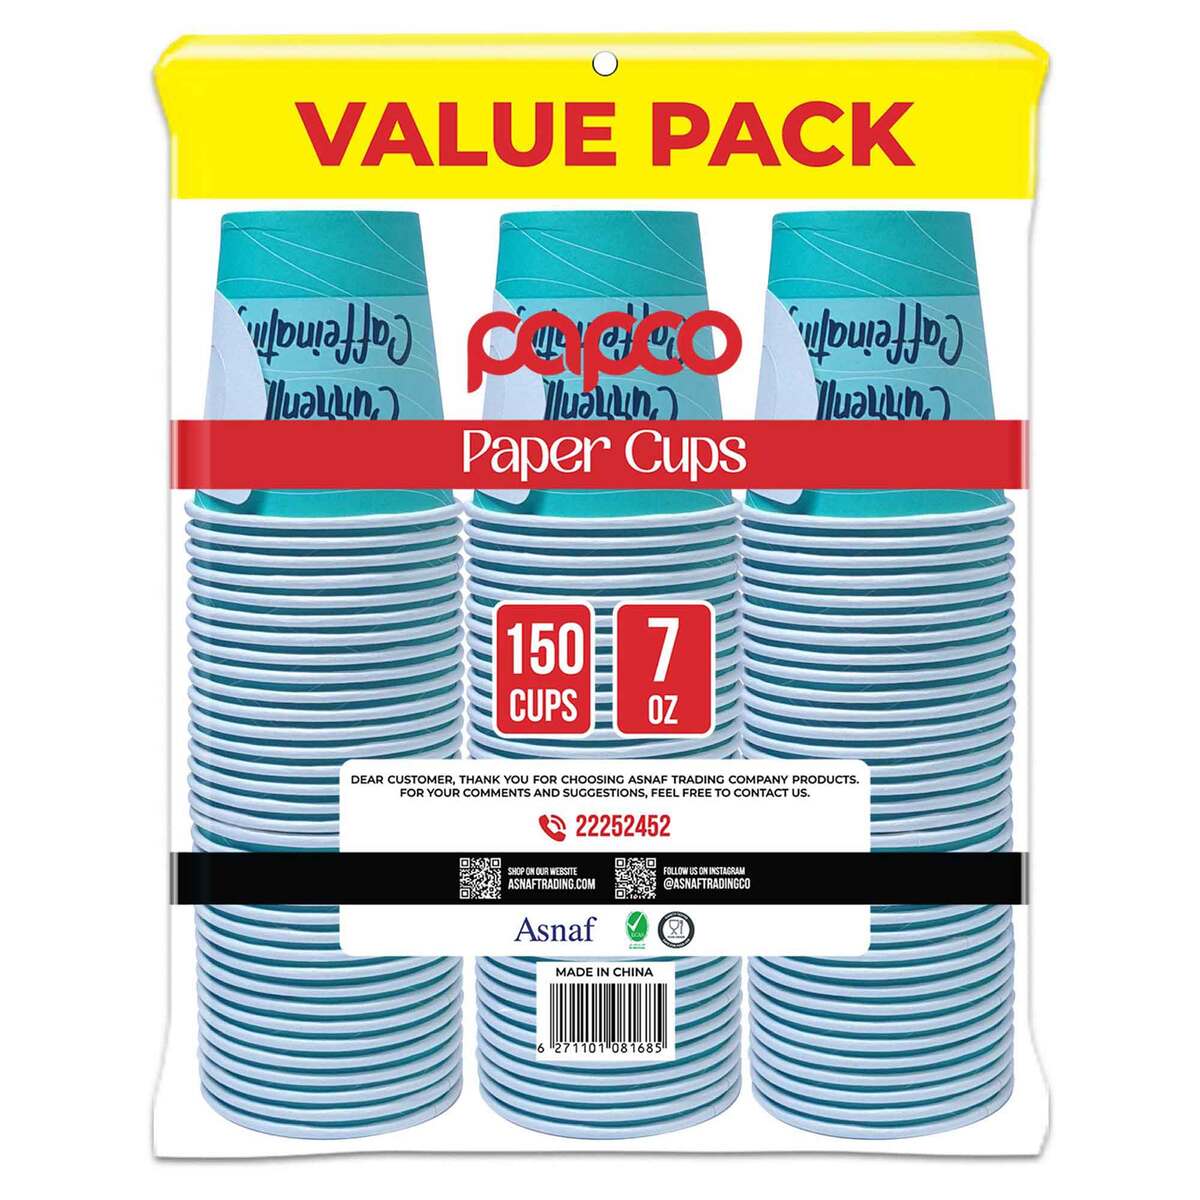 Papco Paper Cup 7oz Value Pack 3 x 50 pcs